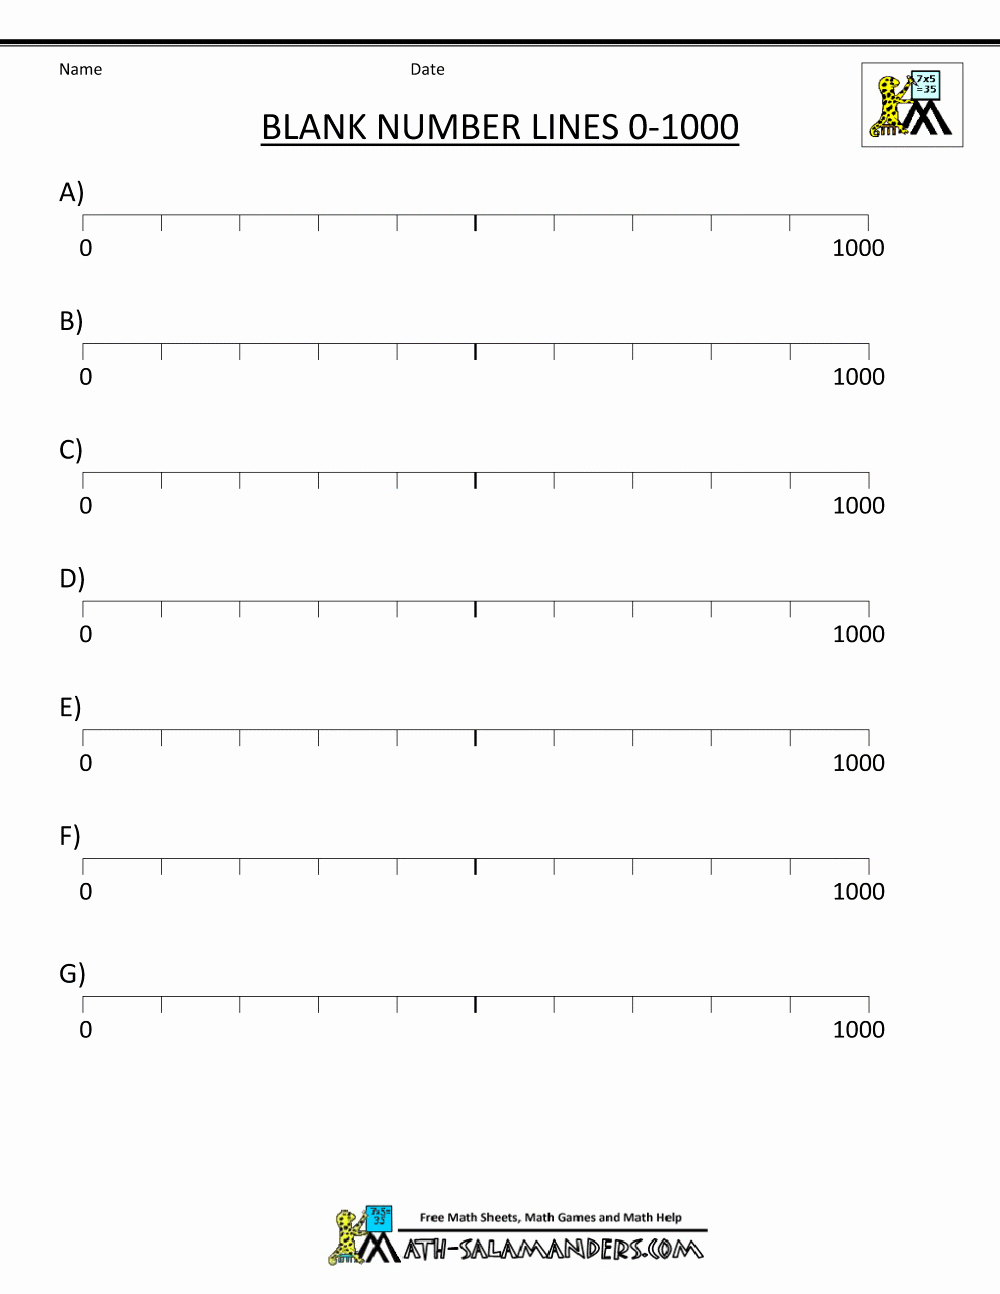 Blank Number Line Worksheet Unique Number Line Worksheet 0 1000 Blank 1 000×1 294 Pixel